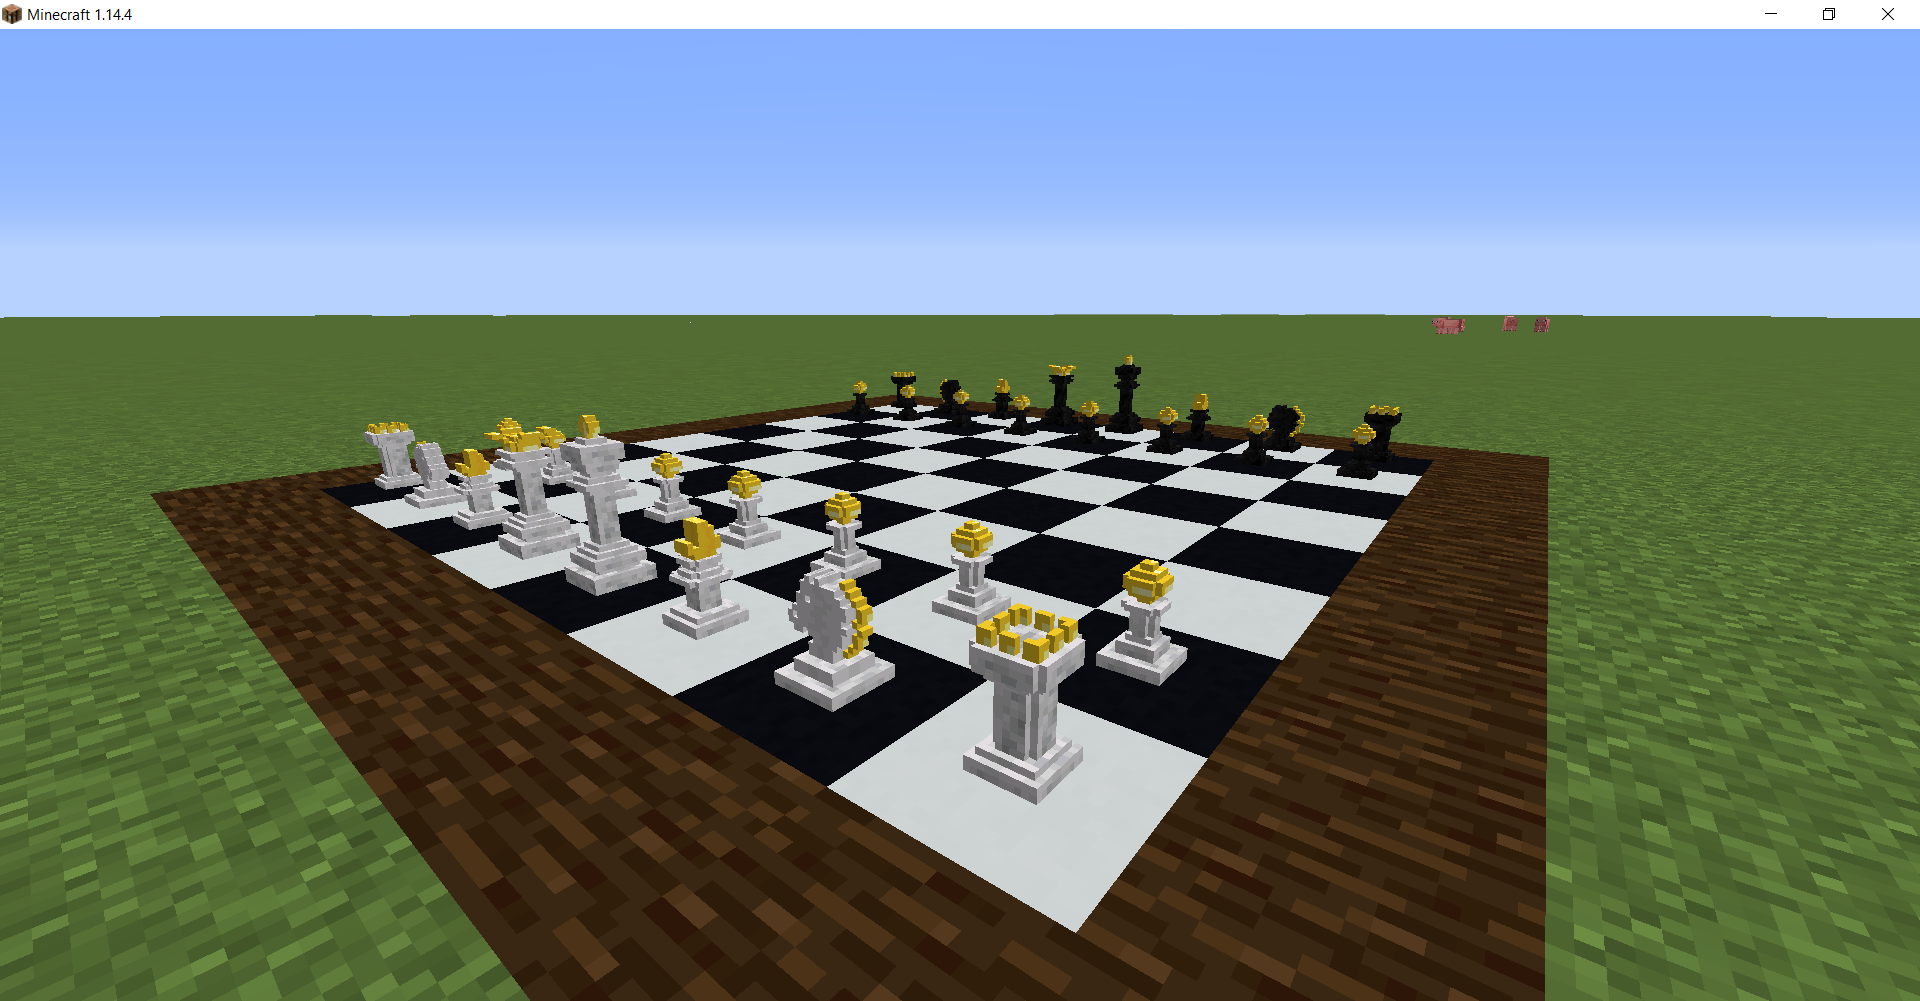 Los jugadores de Minecraft crean un juego de ajedrez jugable a partir de estructuras de elementos